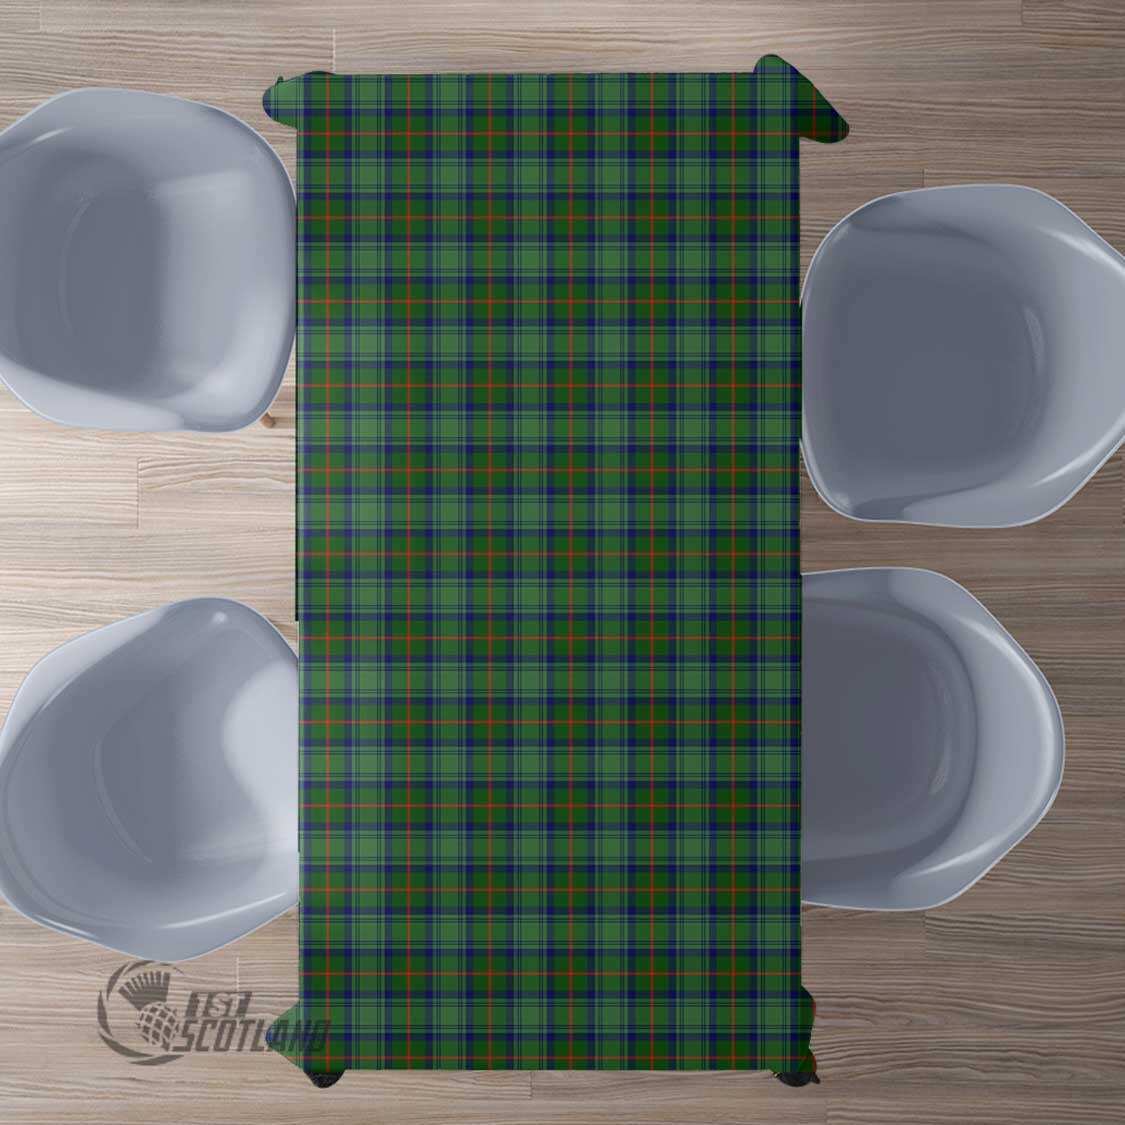 Scottish Cranstoun Tartan Rectangle Tablecloth Full Plaid